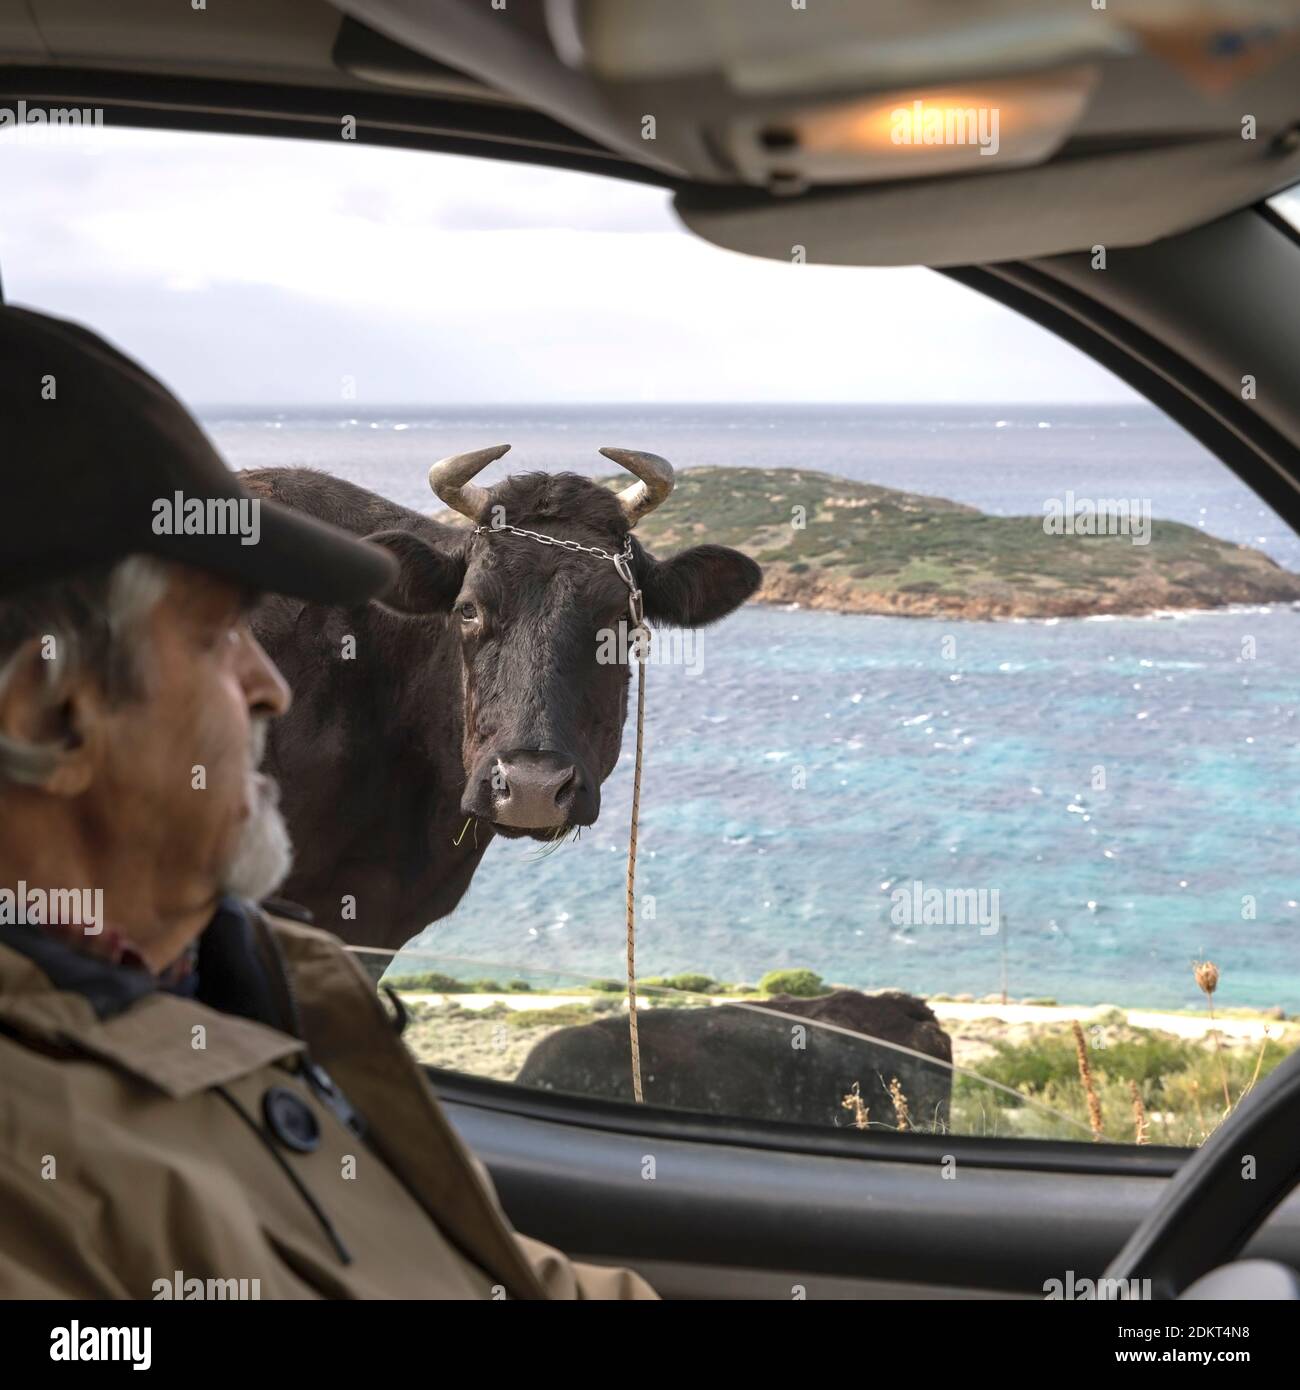 Kuh, die in das Autofenster schaut. Mann auf Fahrersitz mit Augenkontakt mit Kuh. Selektiver Fokus auf dem Rücken. Stockbild. Stockfoto